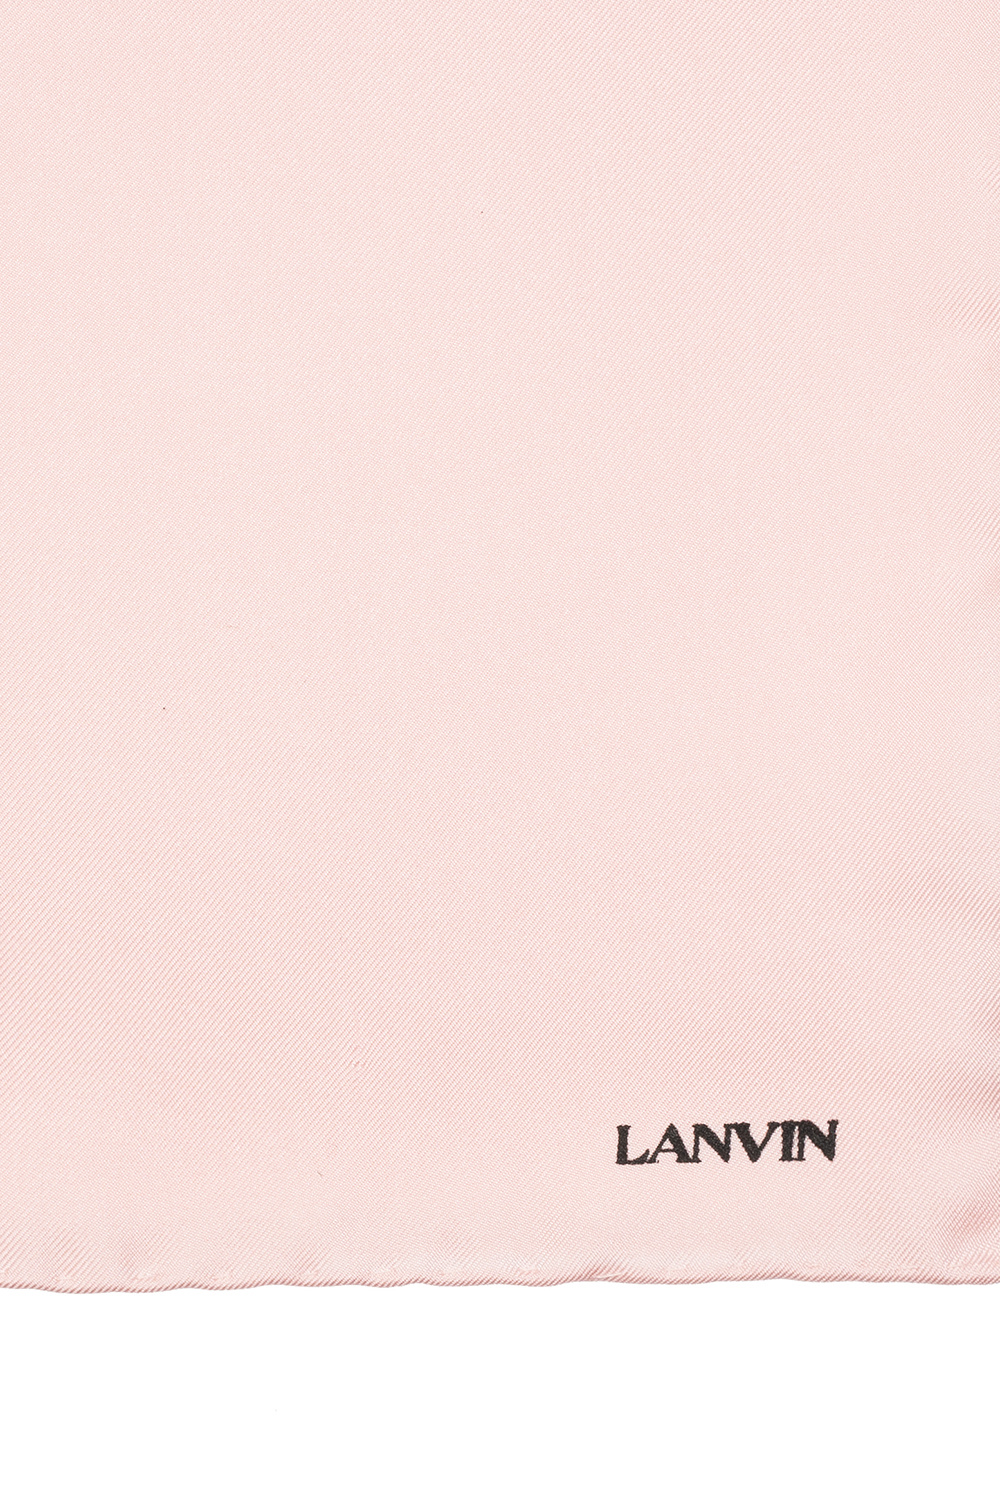 Lanvin Ties / bows